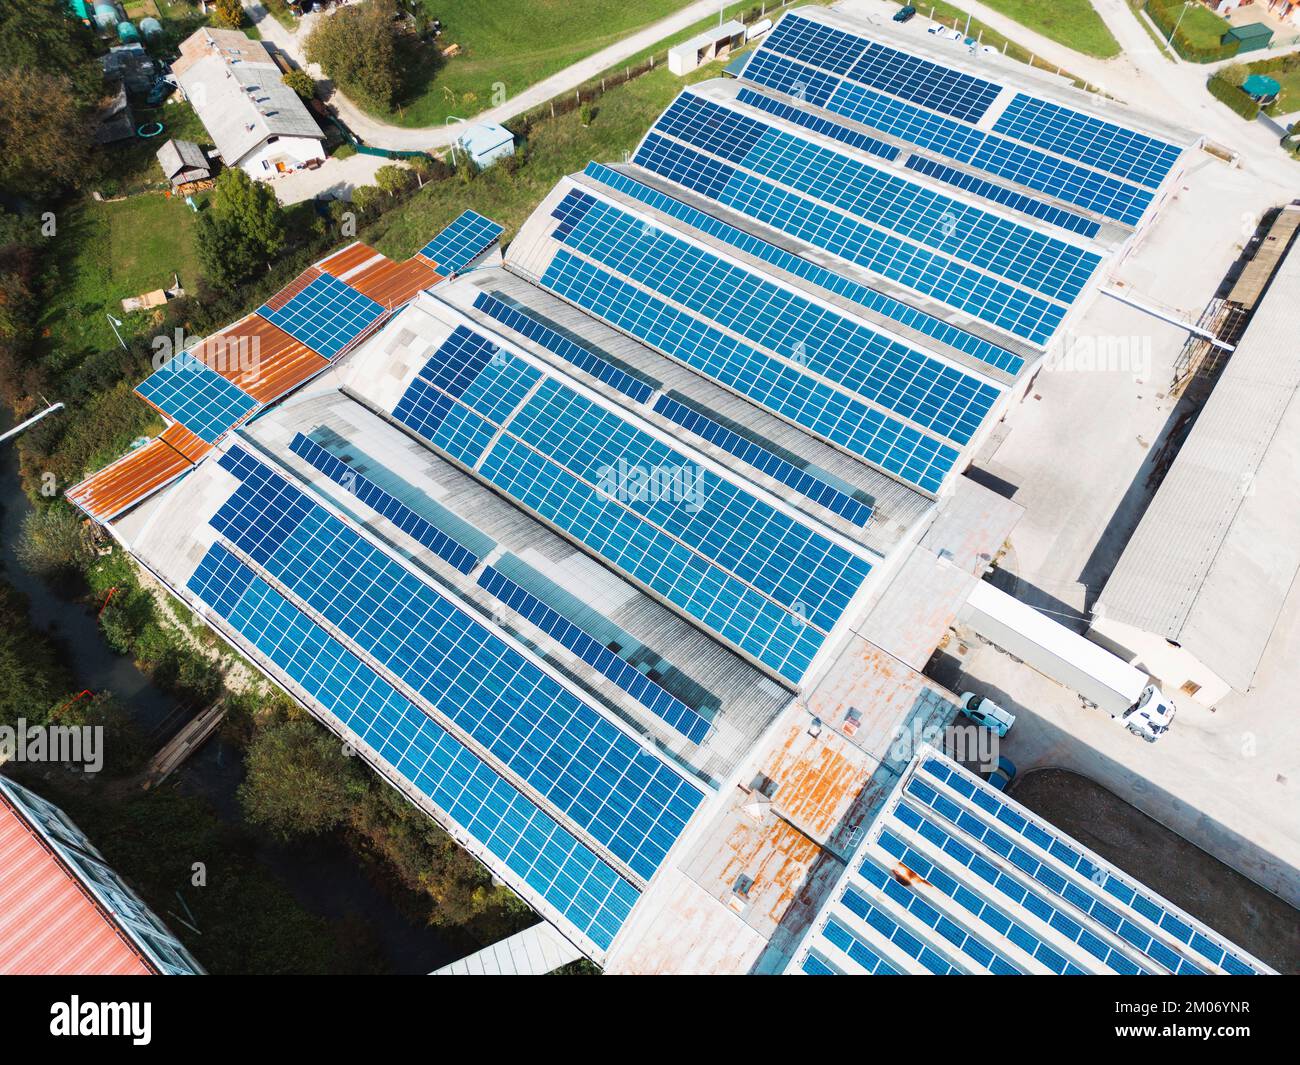 Vue aérienne de haut en bas sur les panneaux solaires installés sur un toit d'un grand bâtiment industriel Banque D'Images